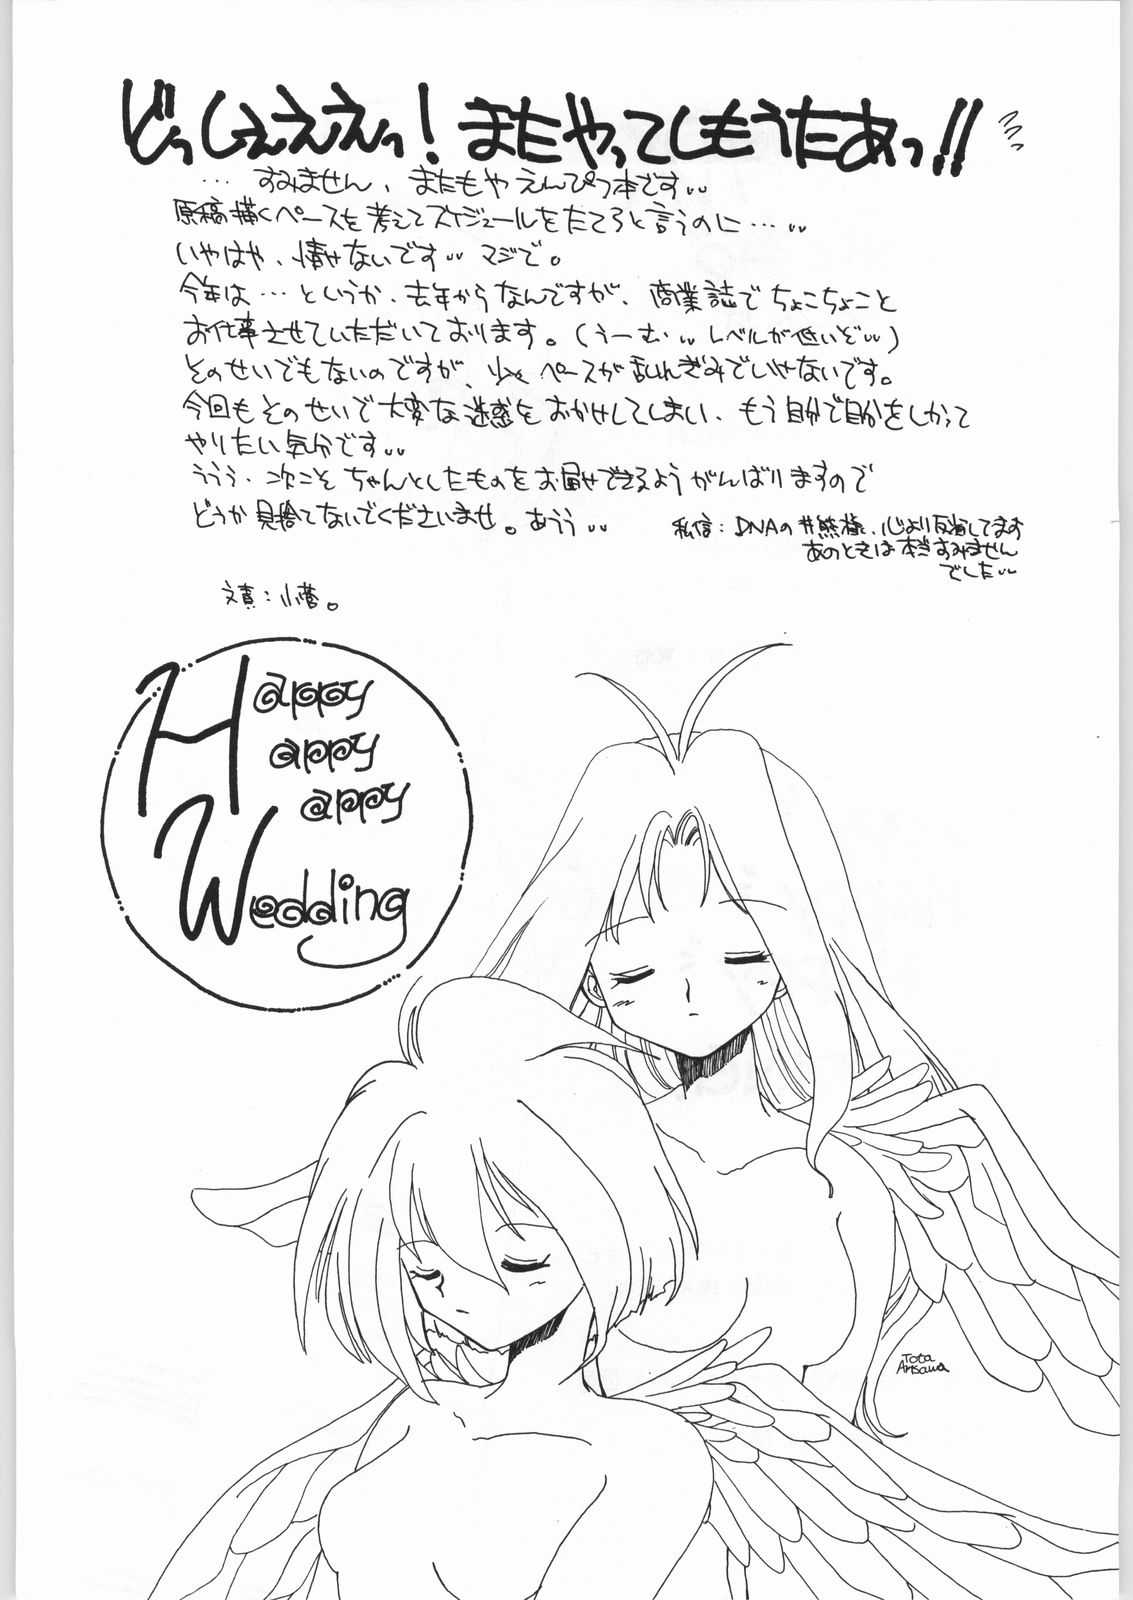 [Cafeteria Watermelon] HAPPY HAPPY HAPPY WEDDING (Ai Tenshi Densetsu Wedding Peach) [カフェテリアWATERMELON] HAPPY HAPPY HAPPY WEDDING (愛天使伝説ウェディング ピーチ)